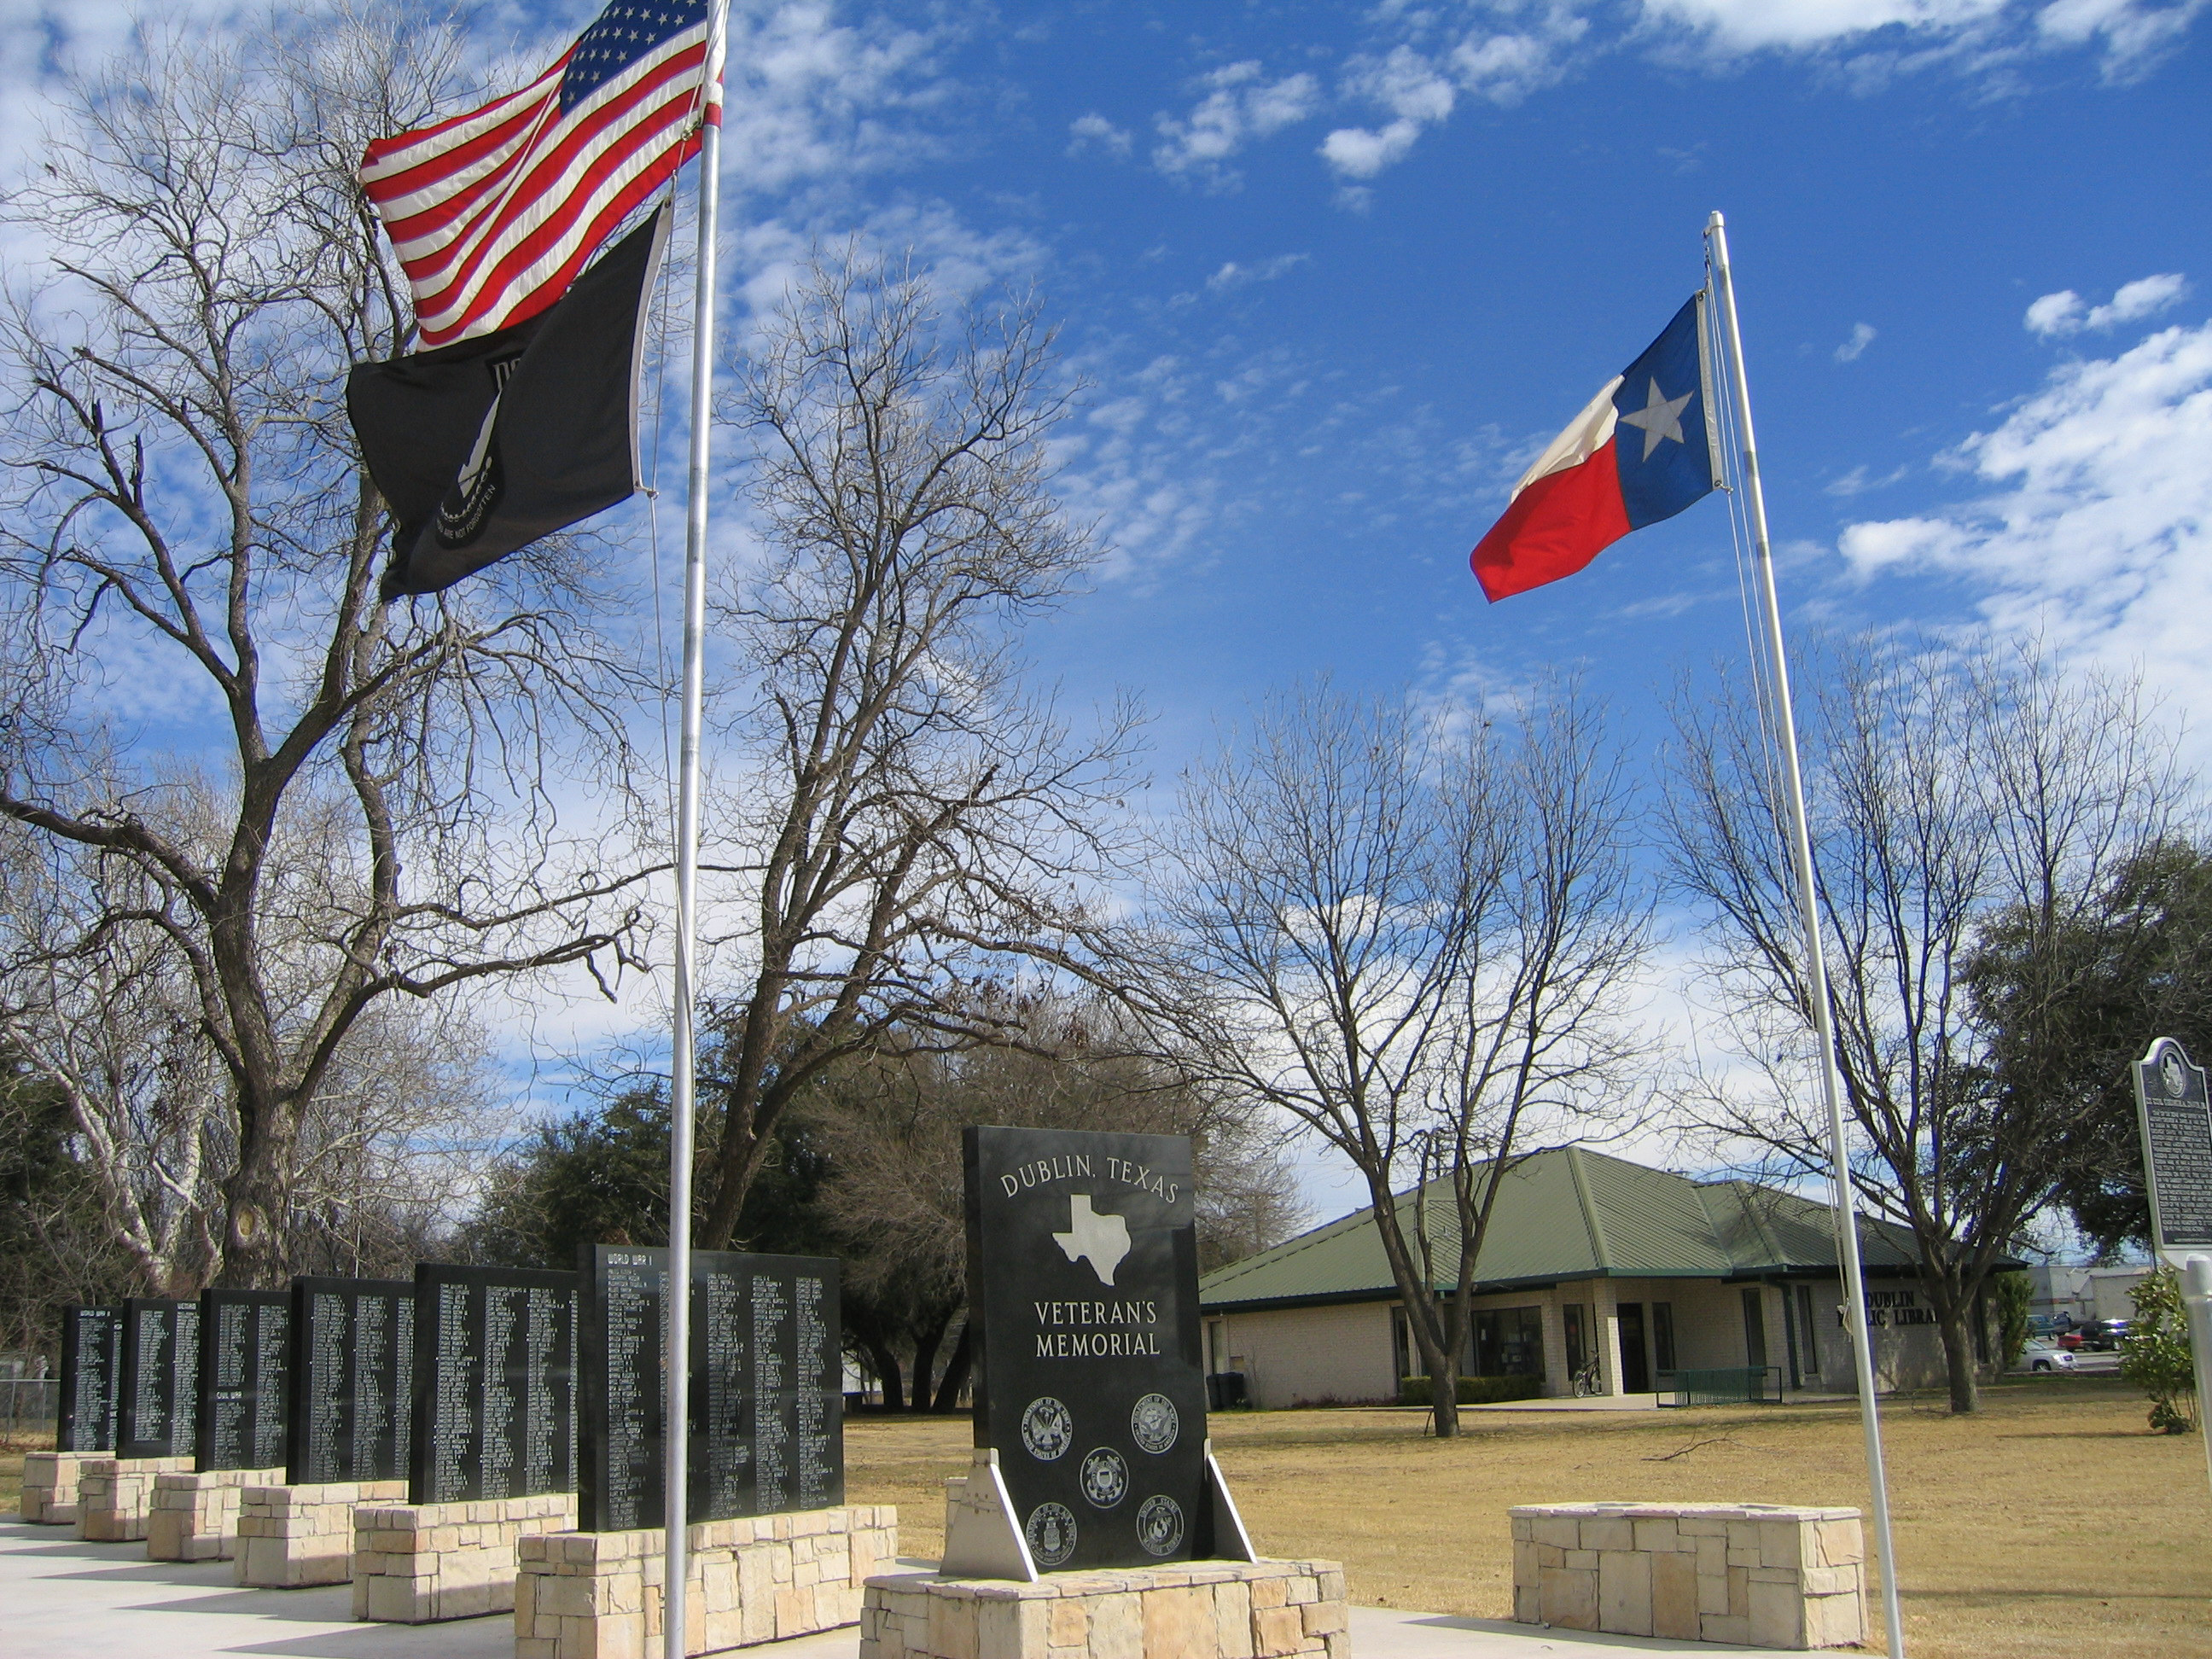 Veterans memorial